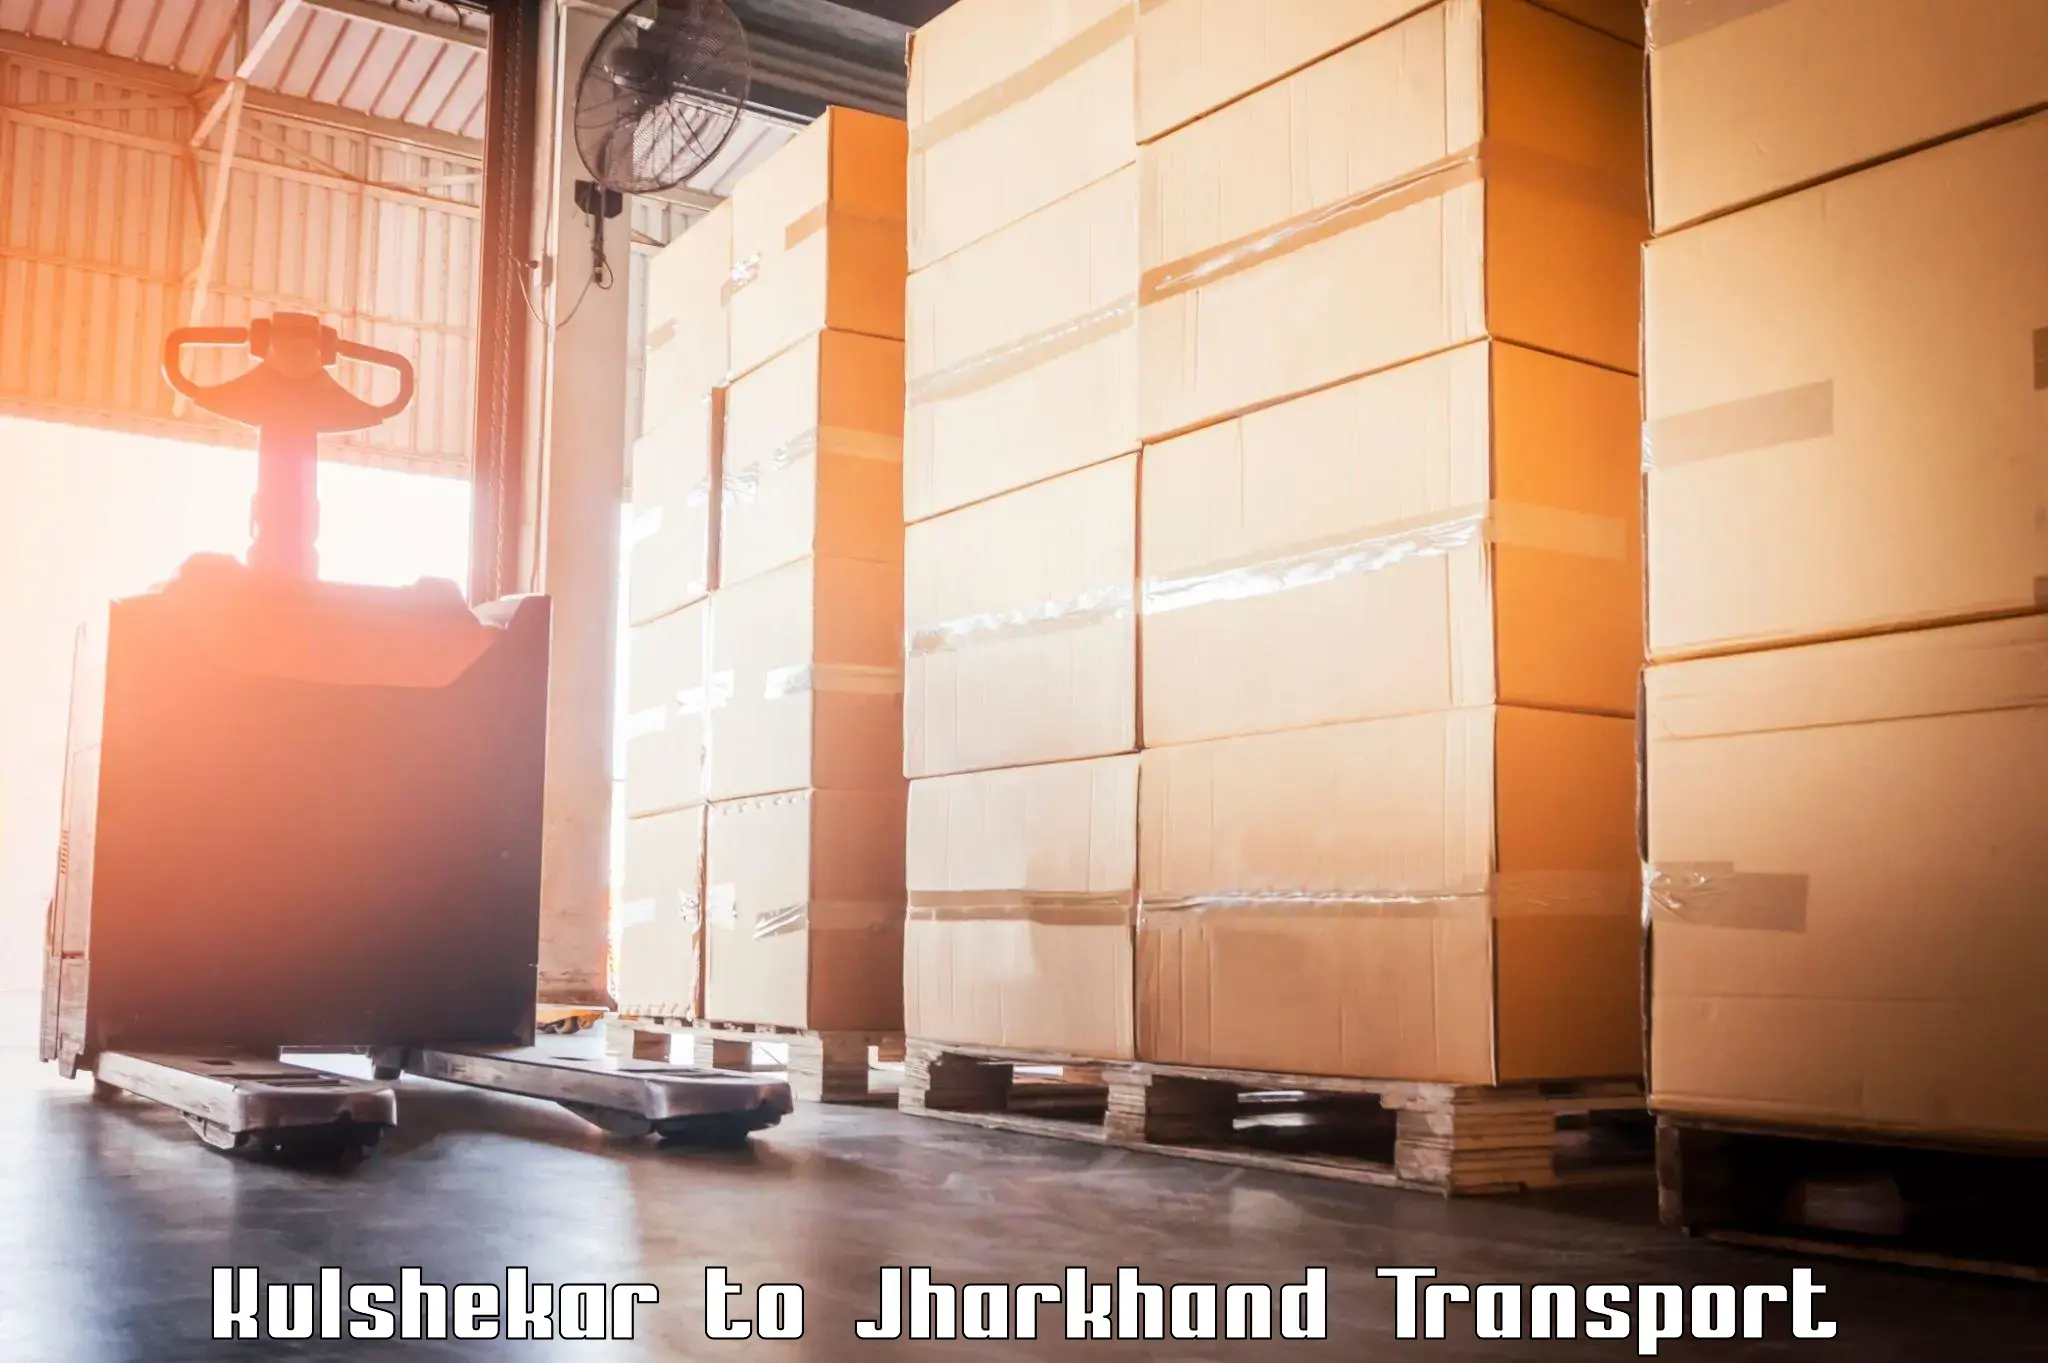 Air freight transport services Kulshekar to Jharkhand